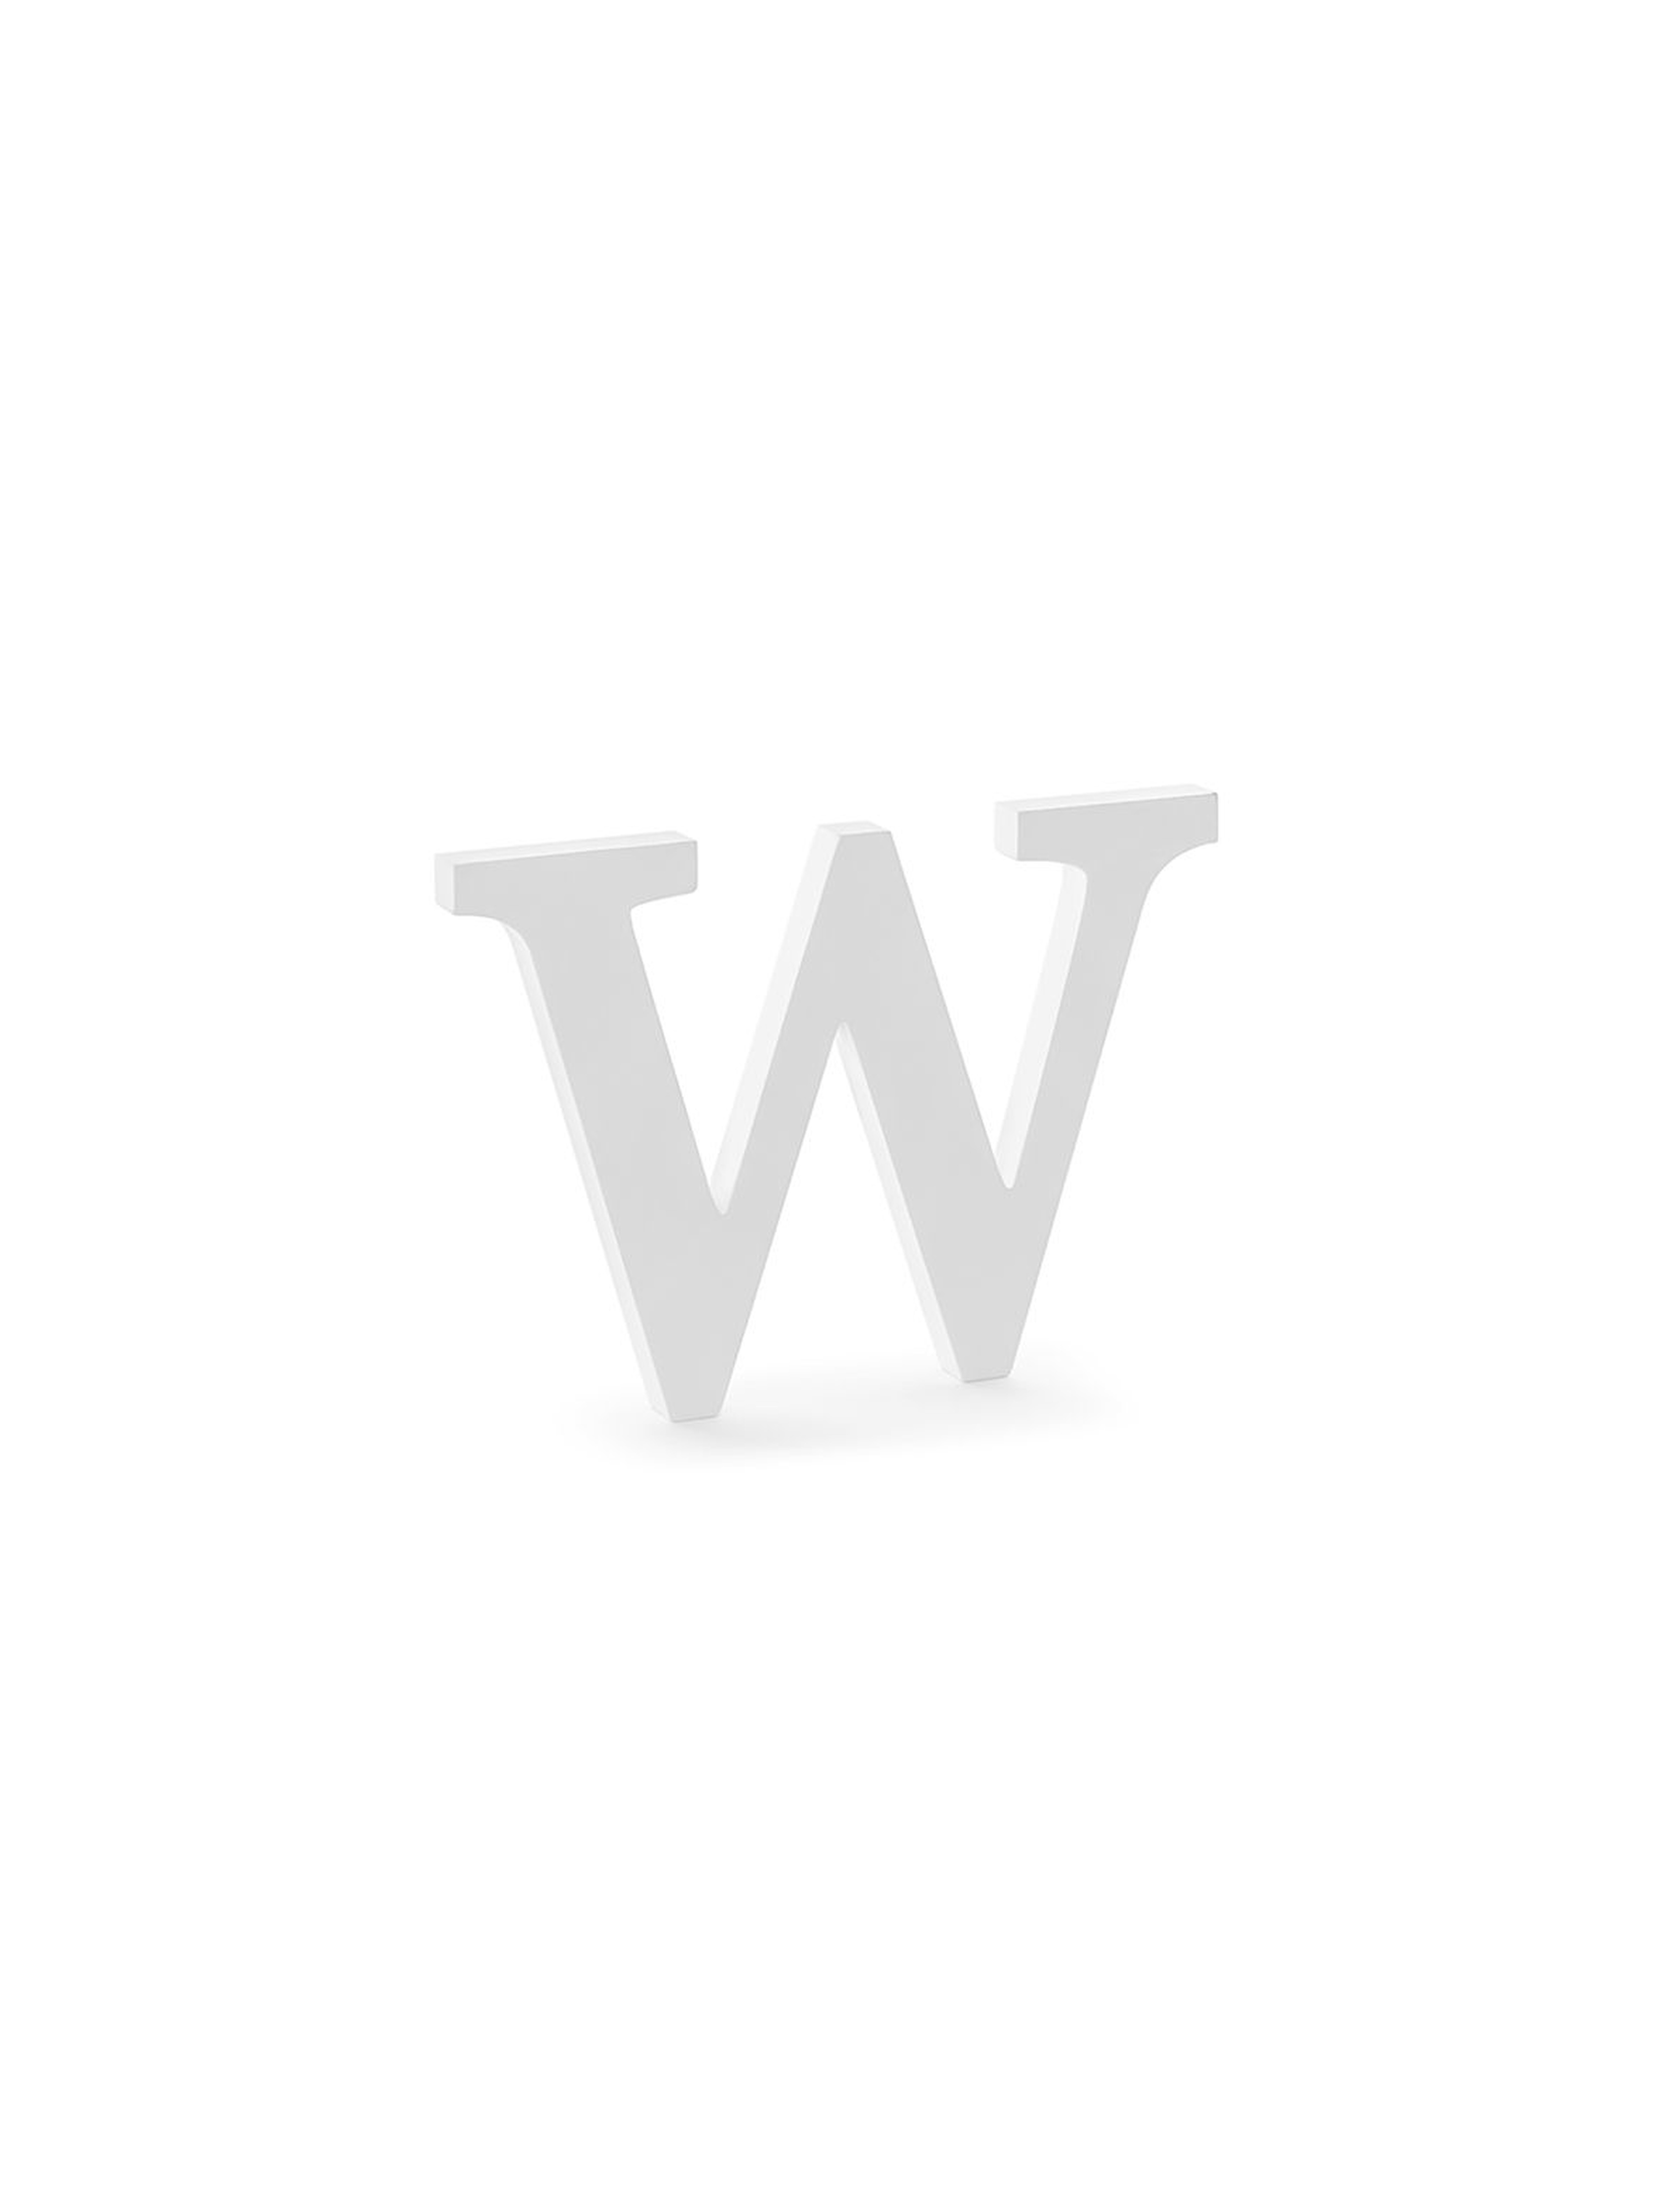 Drewniana litera W, biała 26,5x19cm - 1 szt.